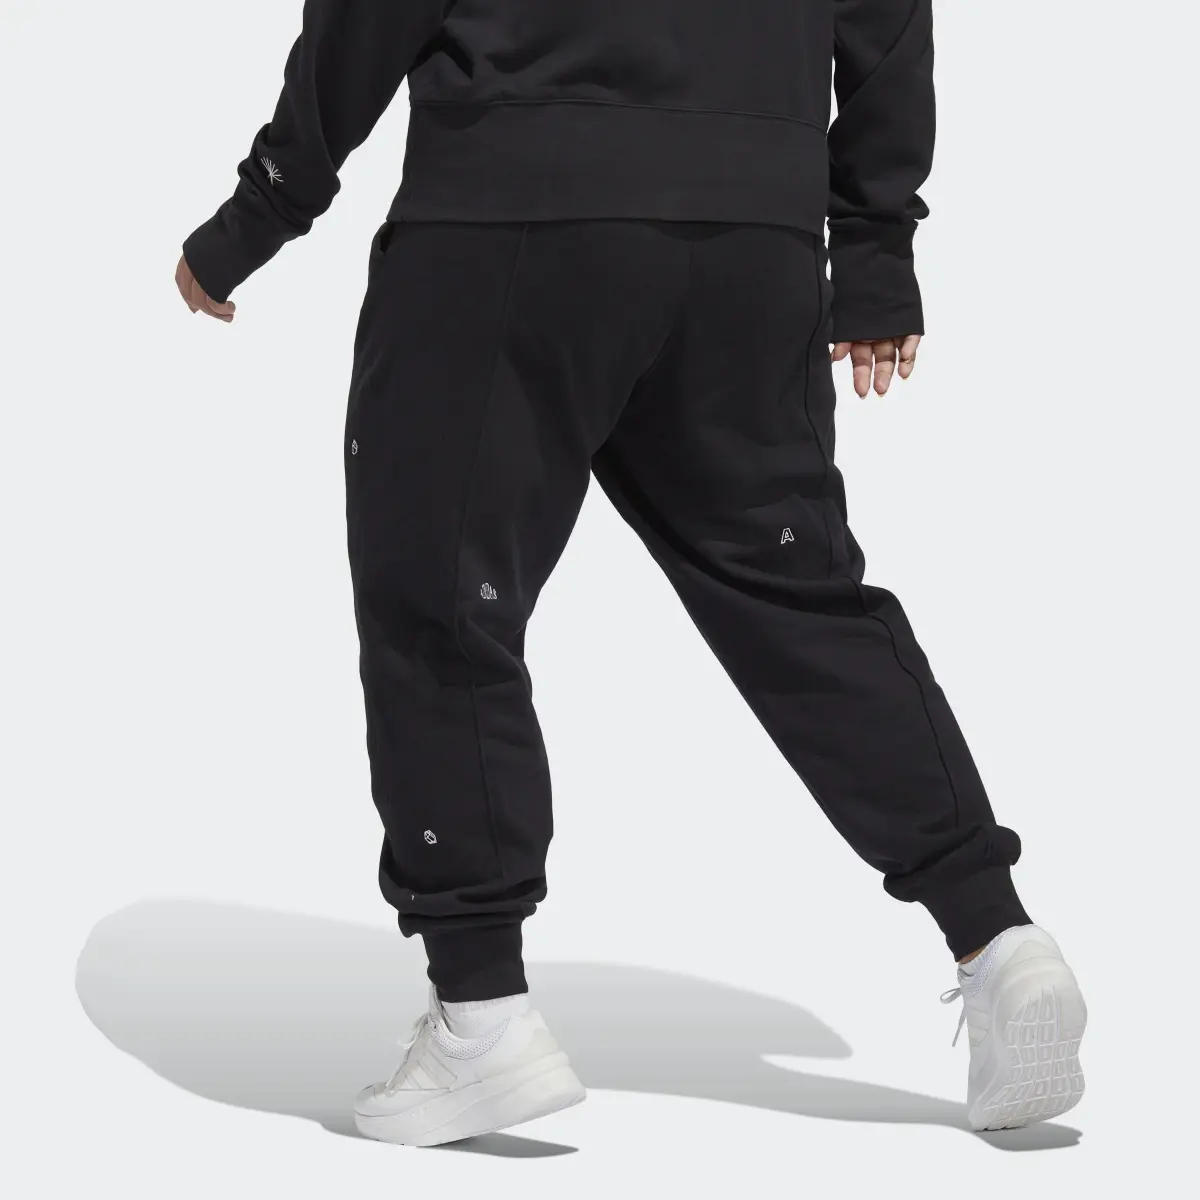 Adidas Pantalon sportswear avec graphismes inspirés de la lithothérapie (Grandes tailles). 2